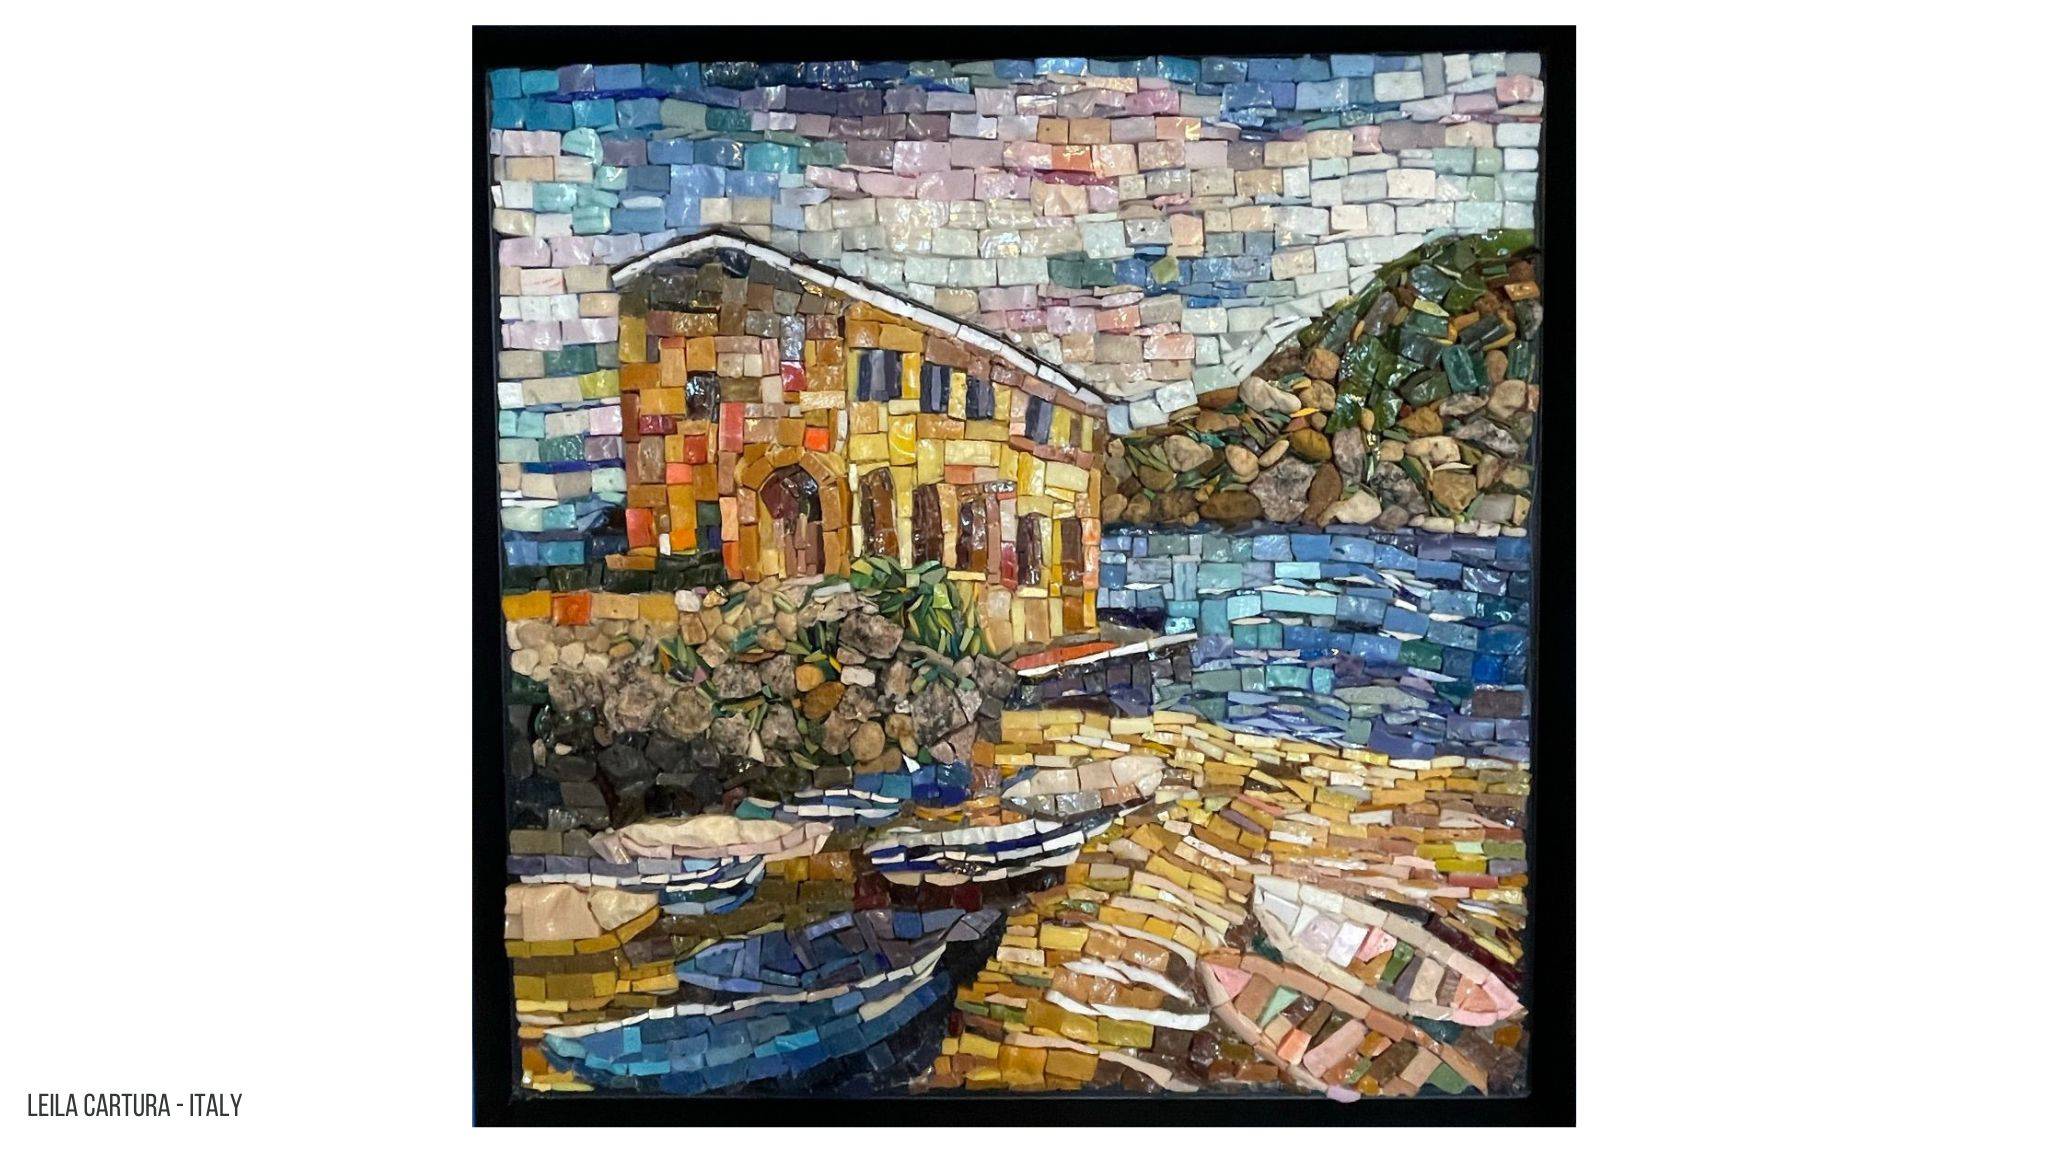 Een mozaiek van een gebouwtje aan een kleine haven met bootjes in het water gemaakt met Smalti. Op de achtergrond is een berg te zien die gemaakt is met stenen.